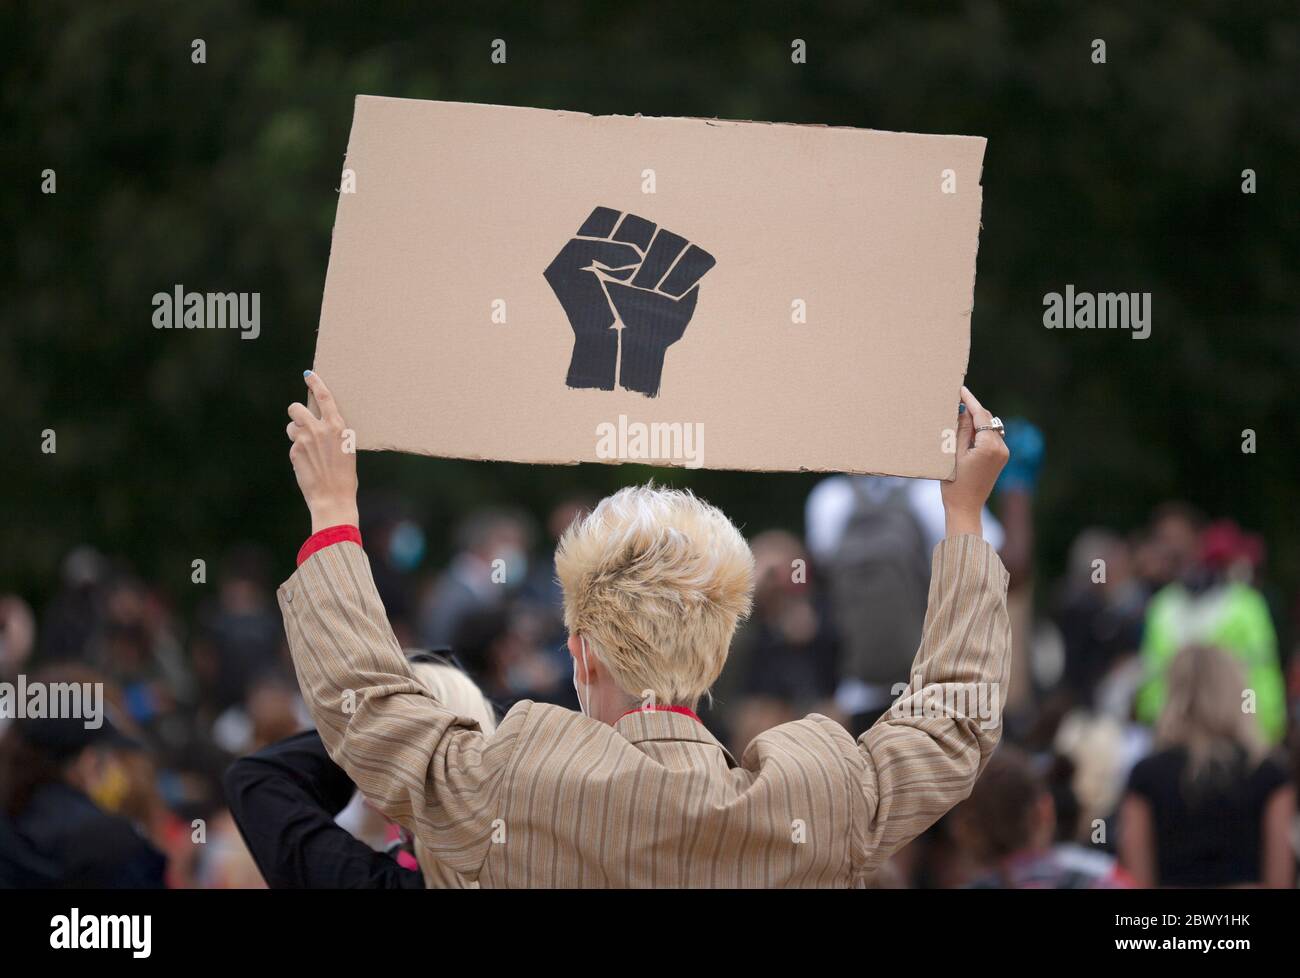 Homme blond aux cheveux tenant un panneau de poing noir fait maison, à la Black Lives Matter, marche de protestation britannique. Londres, Angleterre, Royaume-Uni Banque D'Images